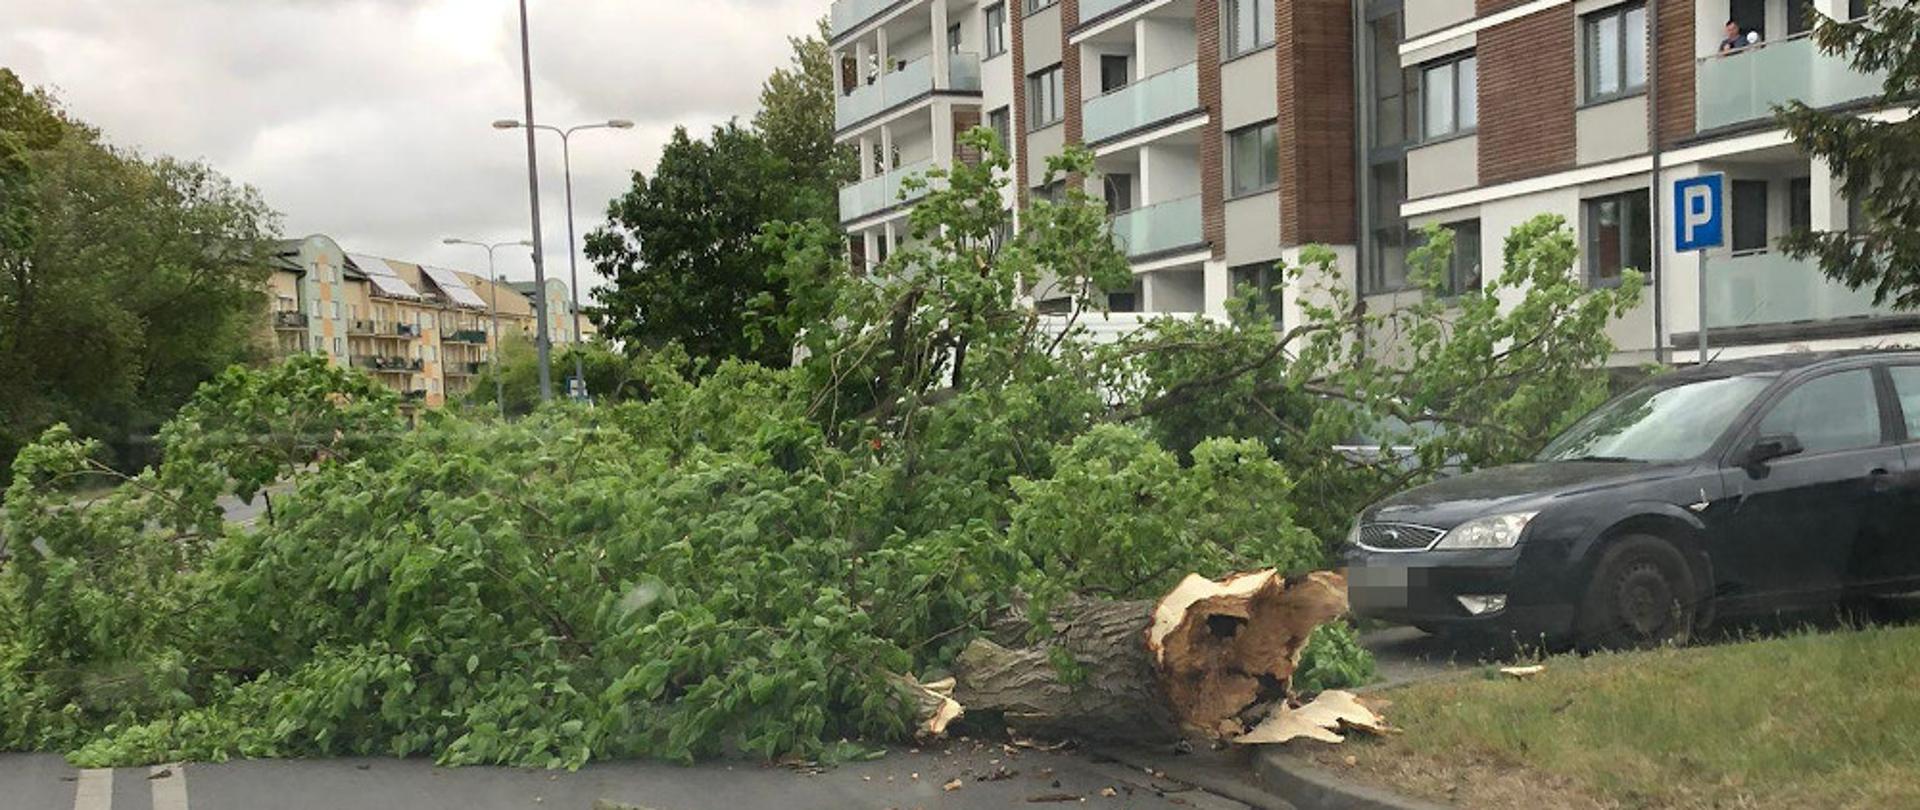 Porywisty wiatr w powiecie szczecineckim - drzewo spadło na jezdnie, zablokowany jeden pas drogi, obok stoi samochód osobowy 